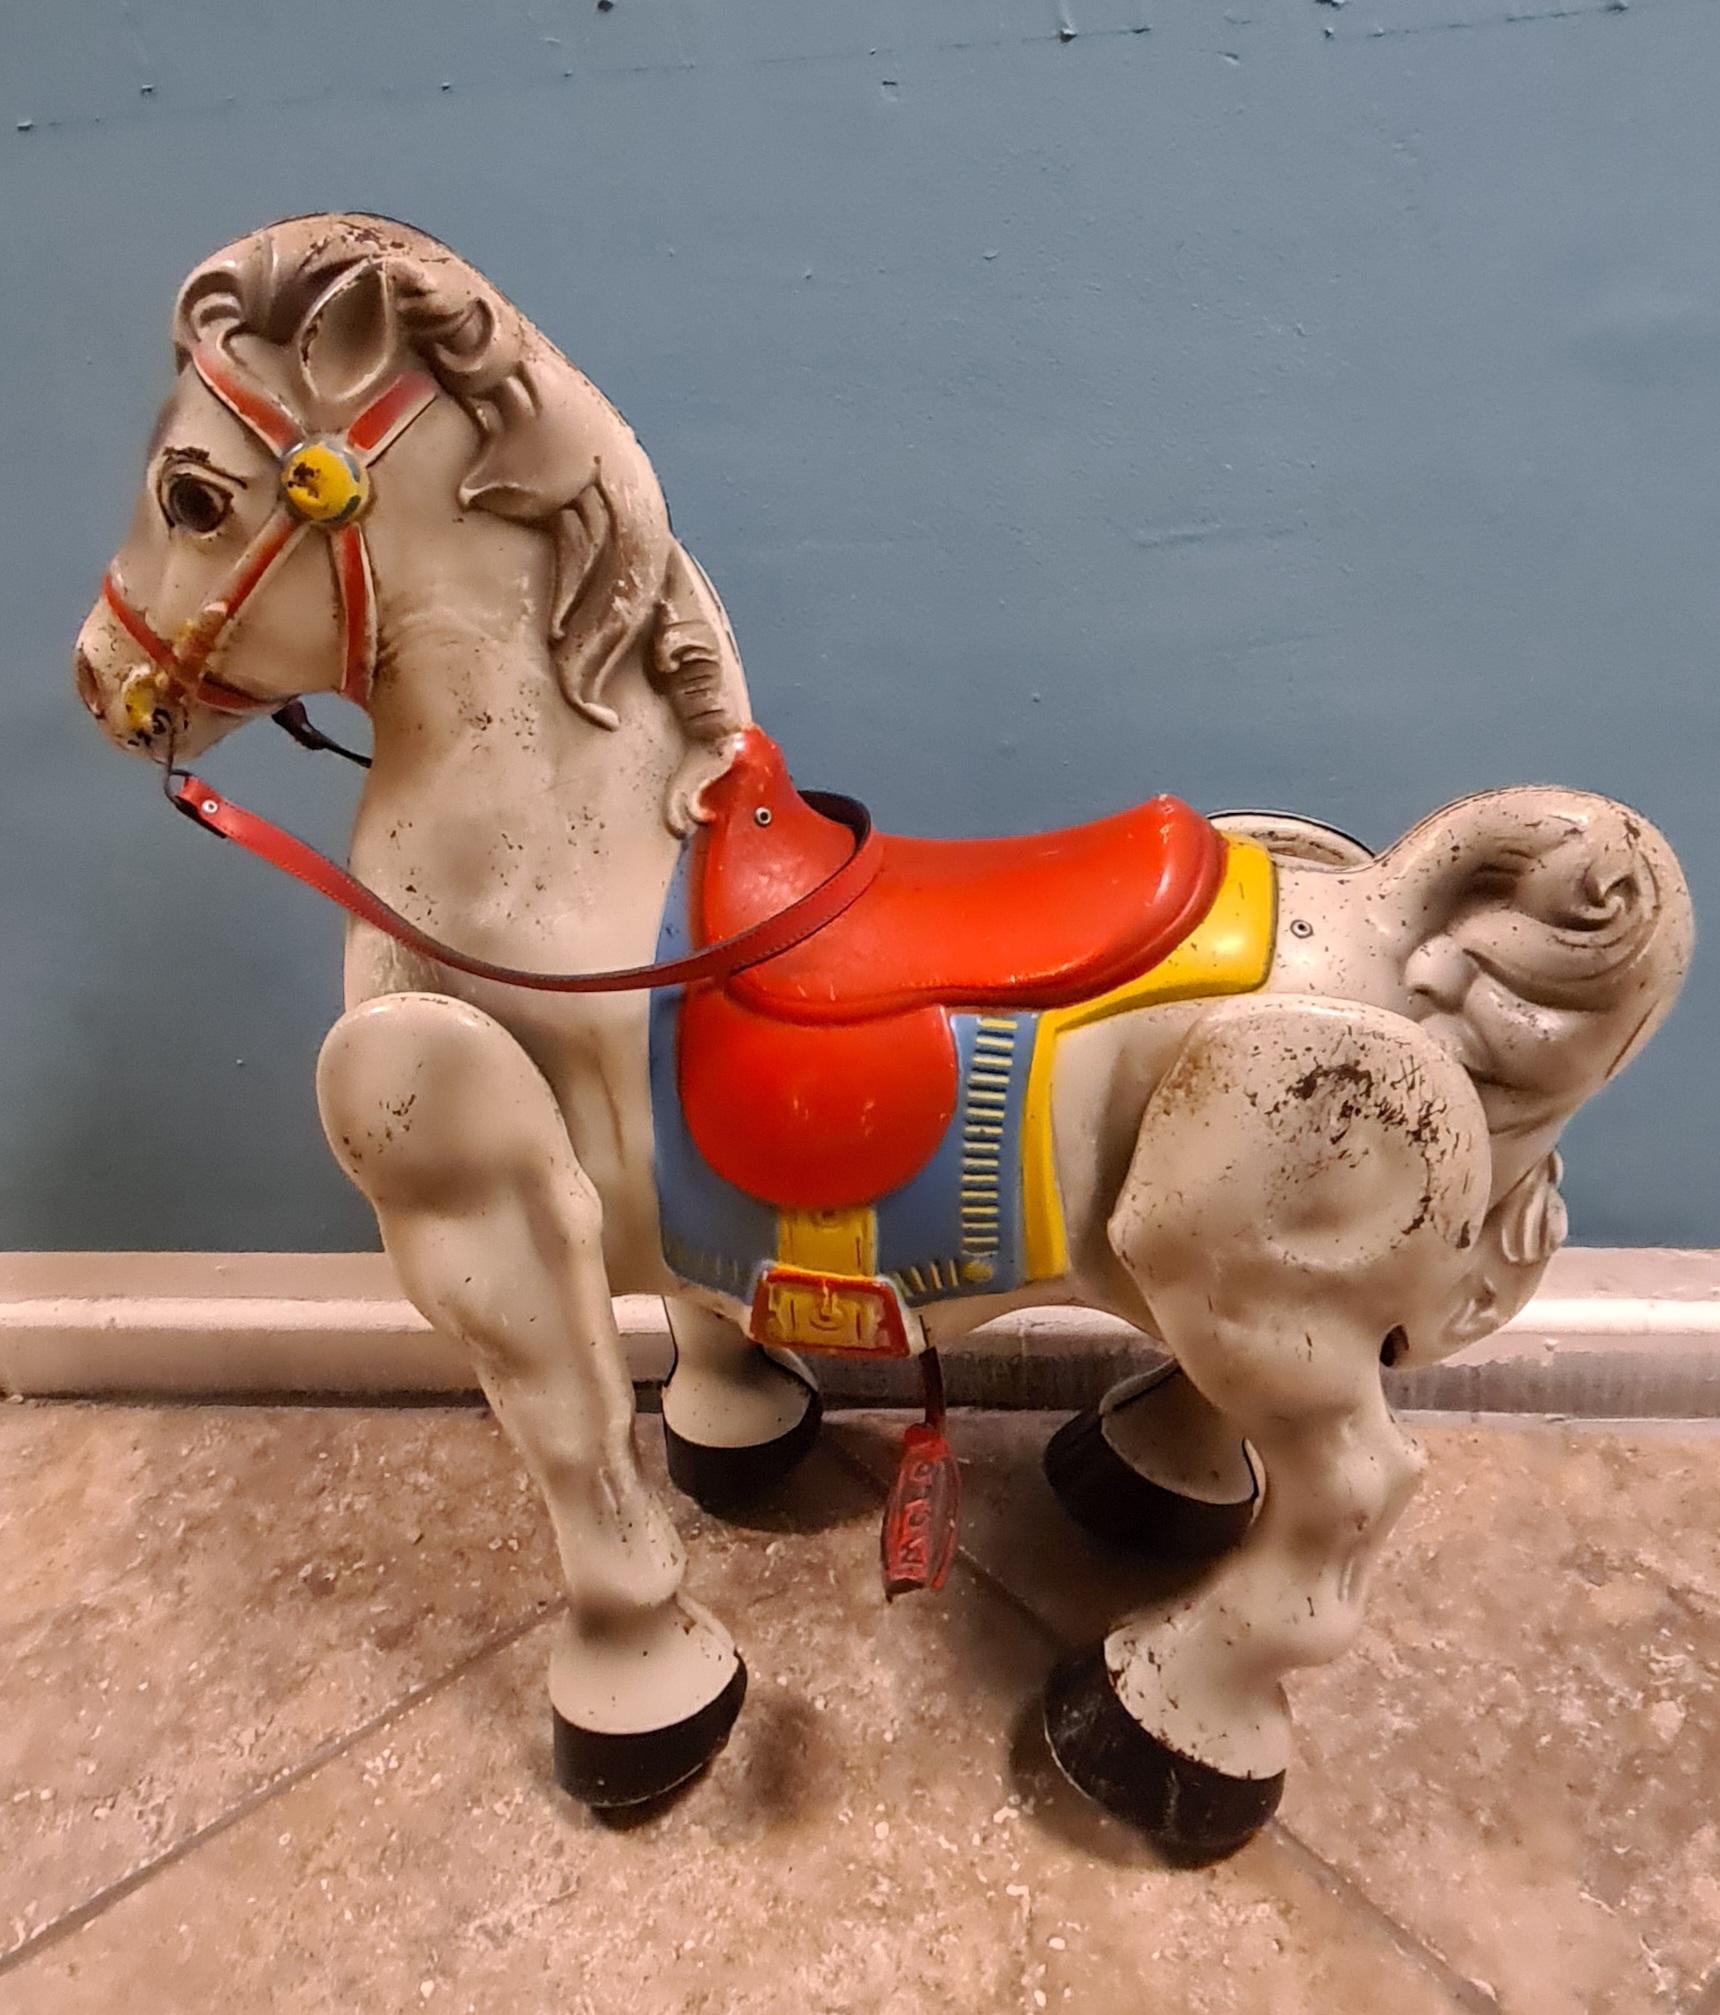 Cavallo giocattolo a pressione della serie Mobo.

Prodotto in Inghilterra negli anni ’50dalla ditta D. SEBEL & CO.

apparteneva alla linea Mobo Bronco caratterizzata da un sistema a molla che, trasferendo il peso del bambino sulle zampe, permetteva